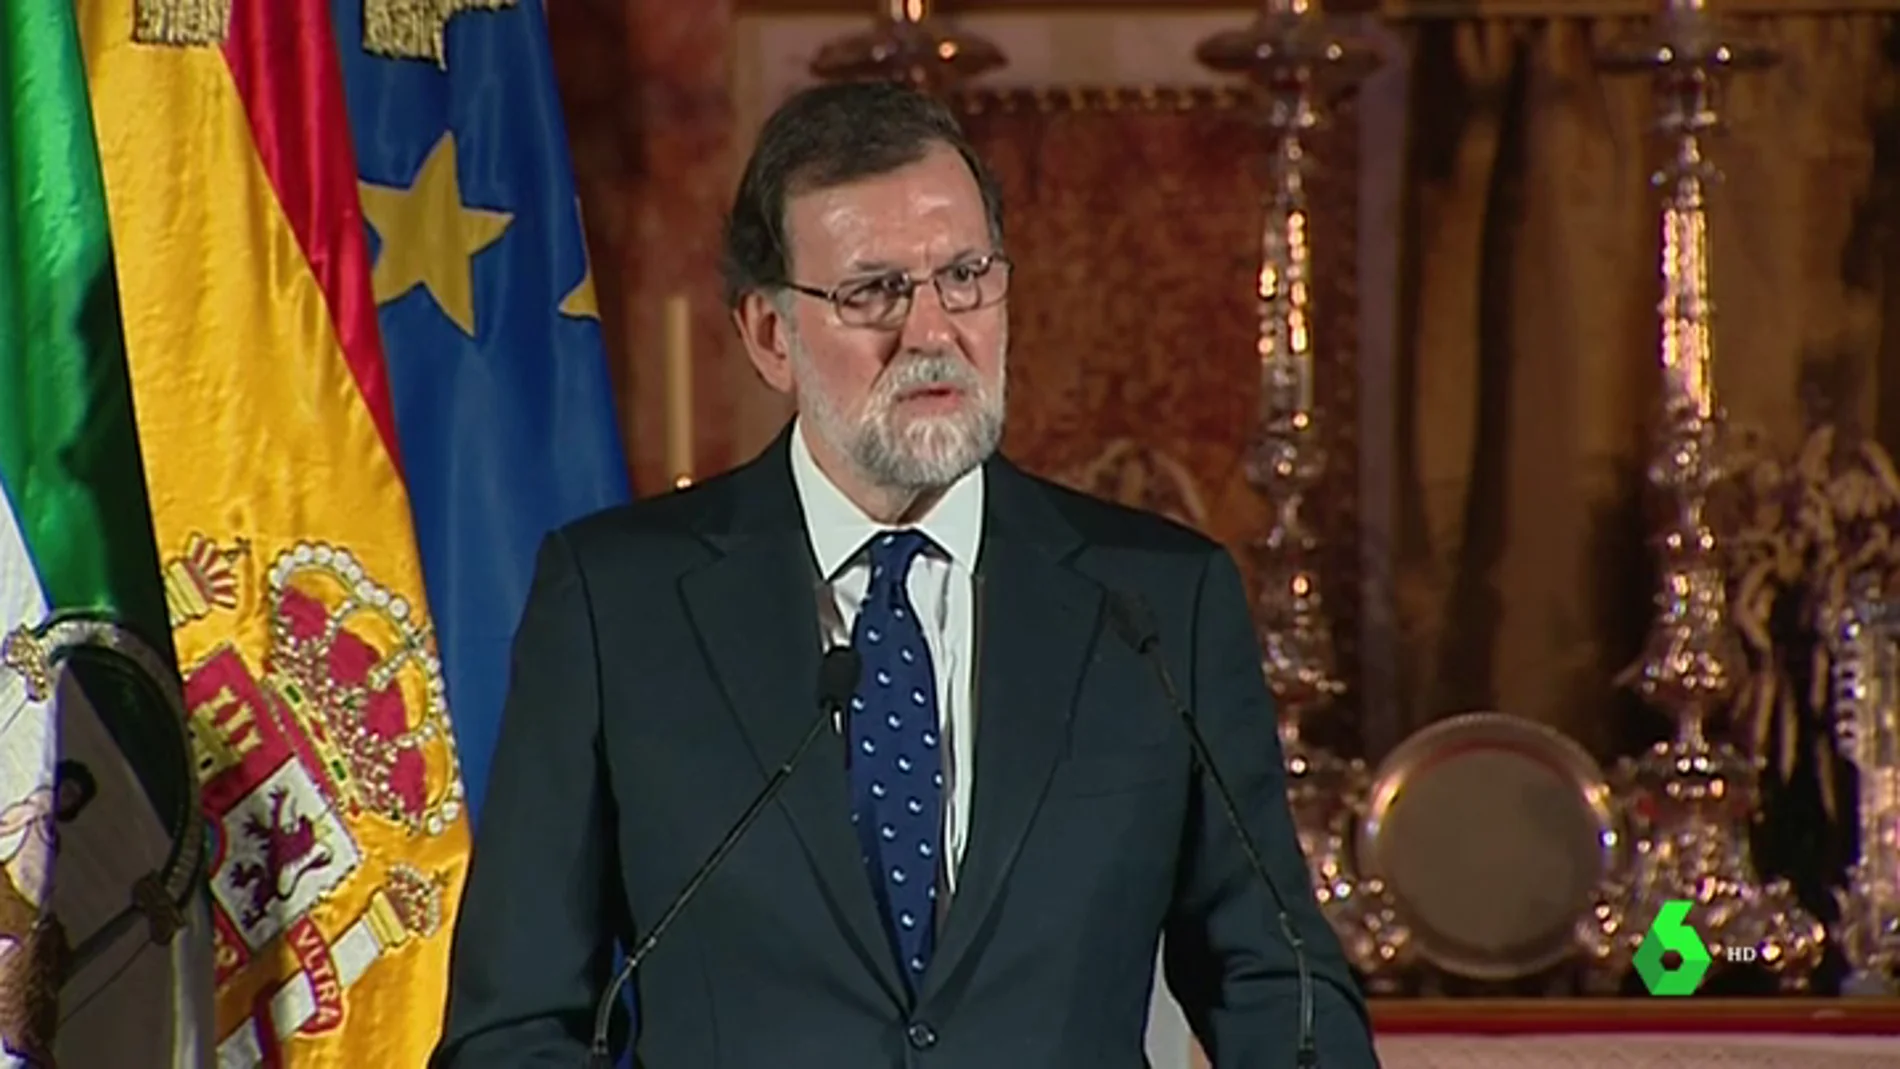 Primera petición de Rajoy a Torra: "Es necesario investir a un presidente legal que se ponga en su sitio"